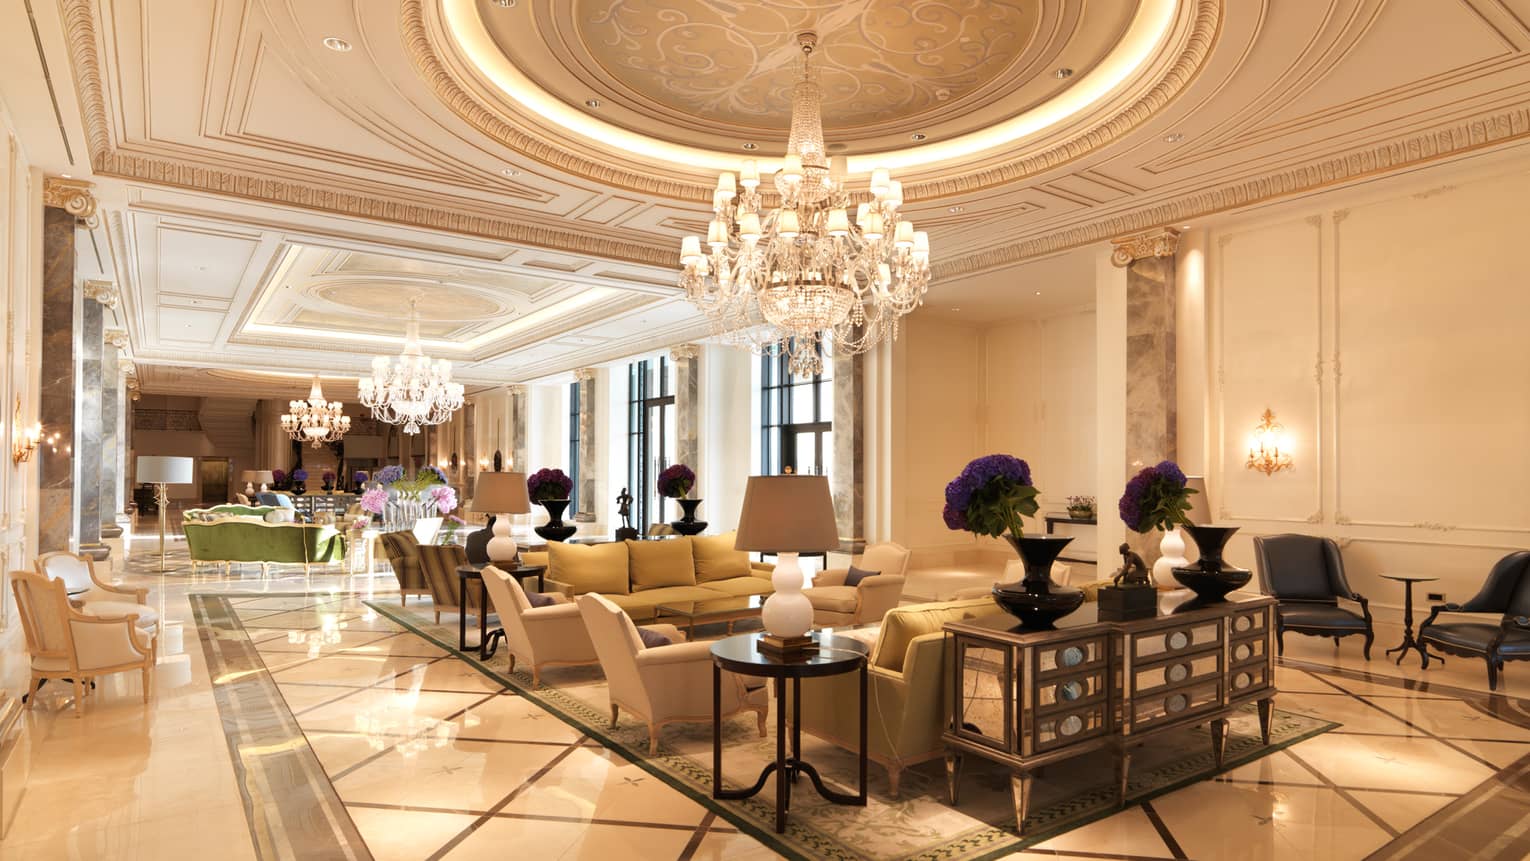 فنادق فور سيزونز في الإمارات تعلن عن توفر وظائف شاغرة برواتب ومزايا مجزية للرجال والنساء